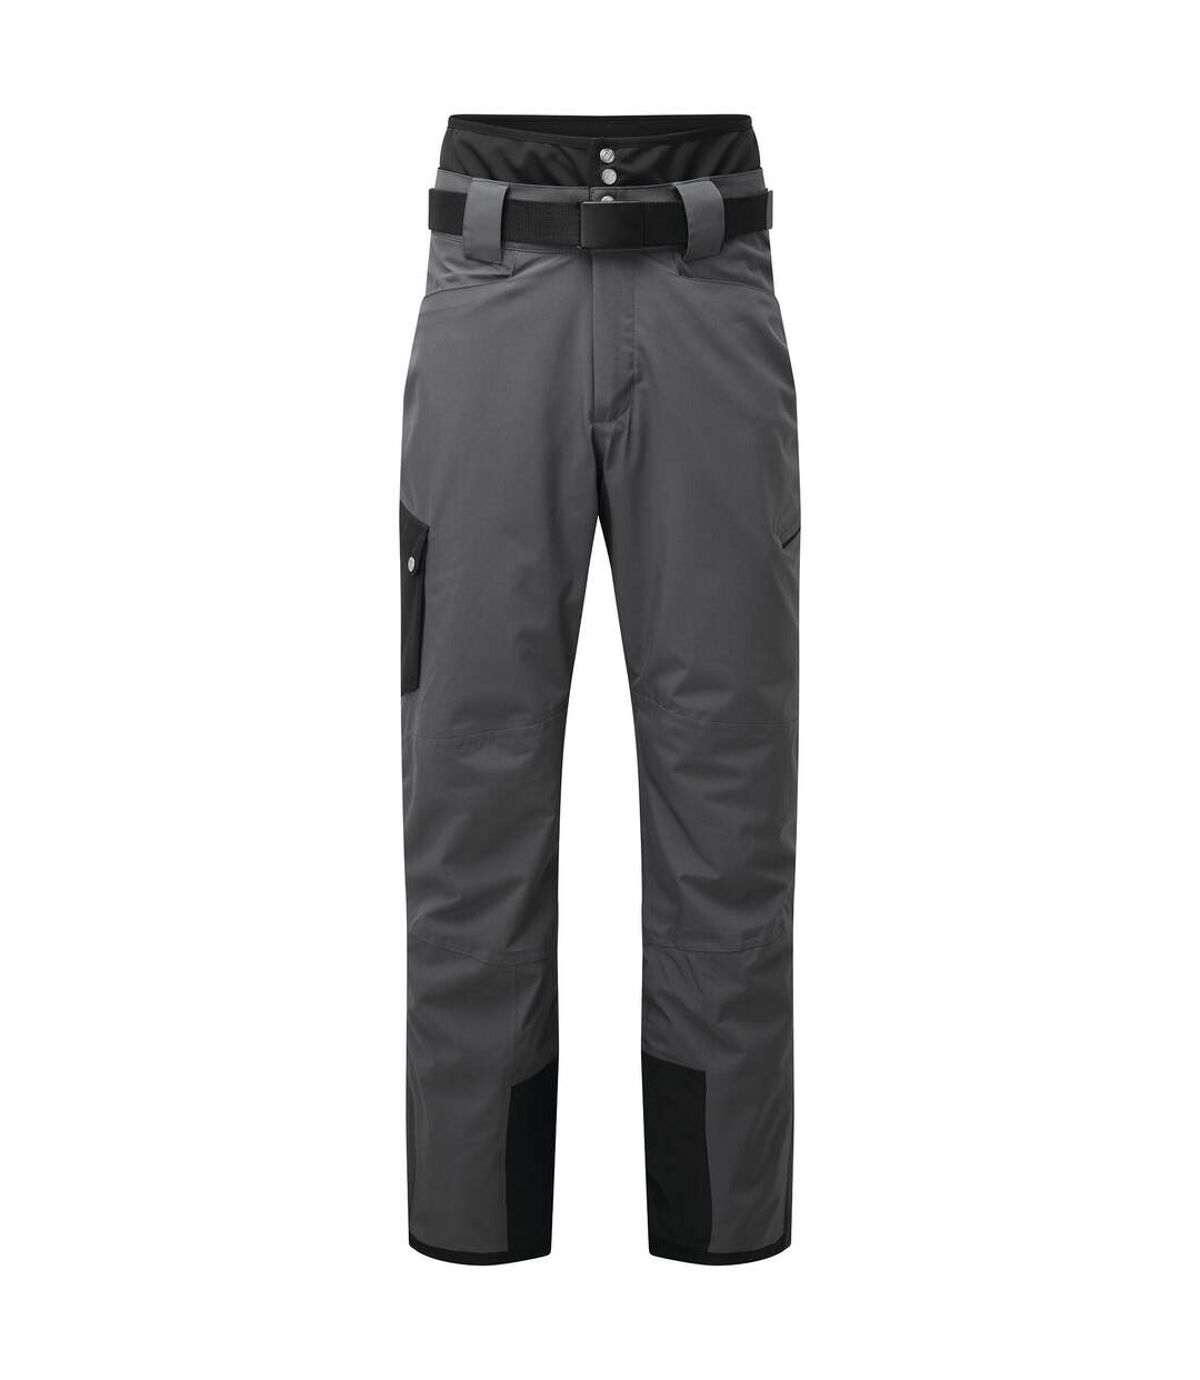 Dare 2B - Pantalon de ski ABSOLUTE - Homme (Gris foncé / Noir) - UTRG5466